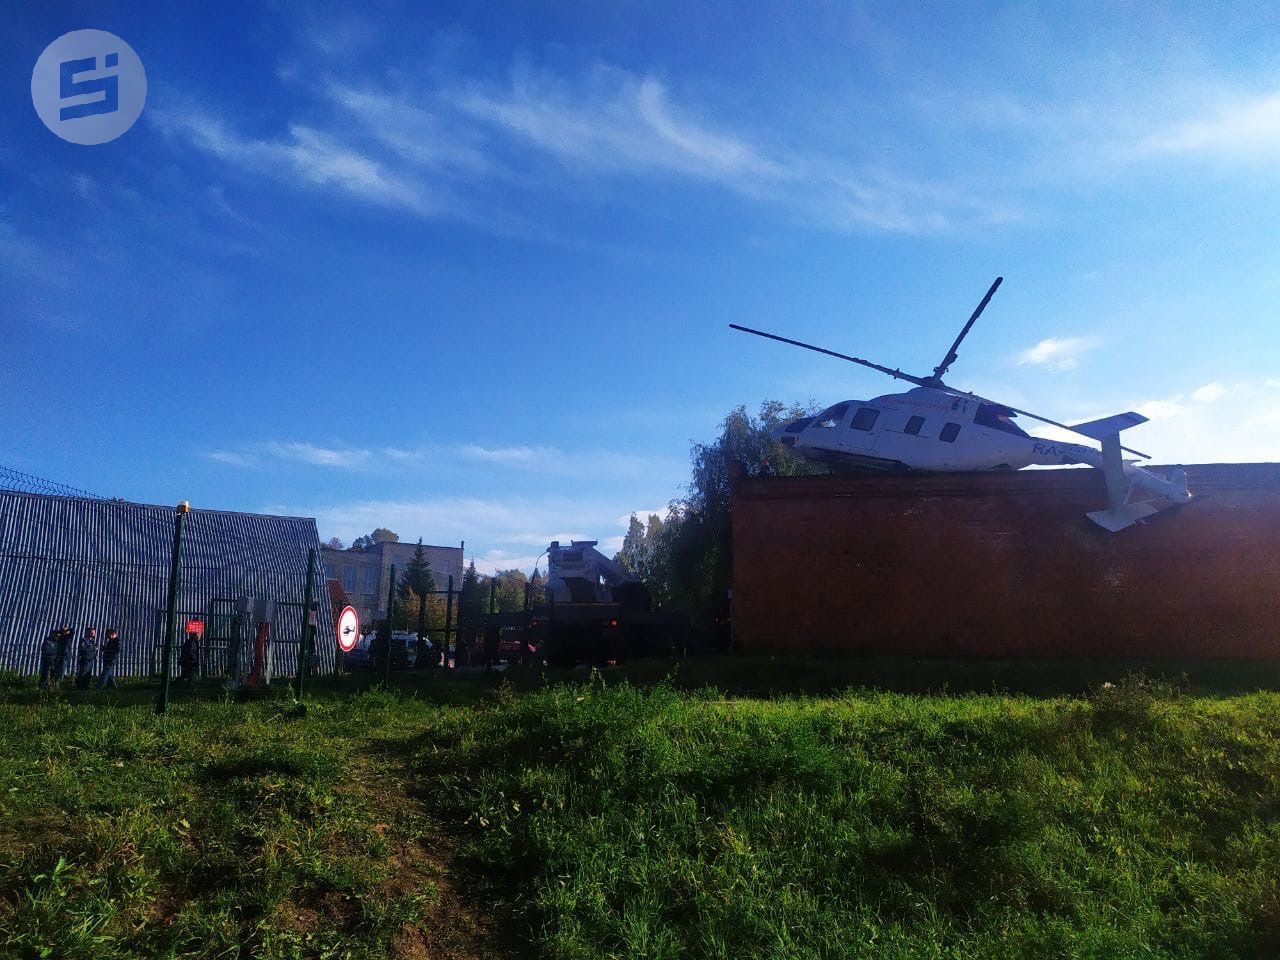 

Решение о сотрудничестве с компанией, чей вертолет совершил жесткую посадку в Ижевске, примут после проверки инцидента

